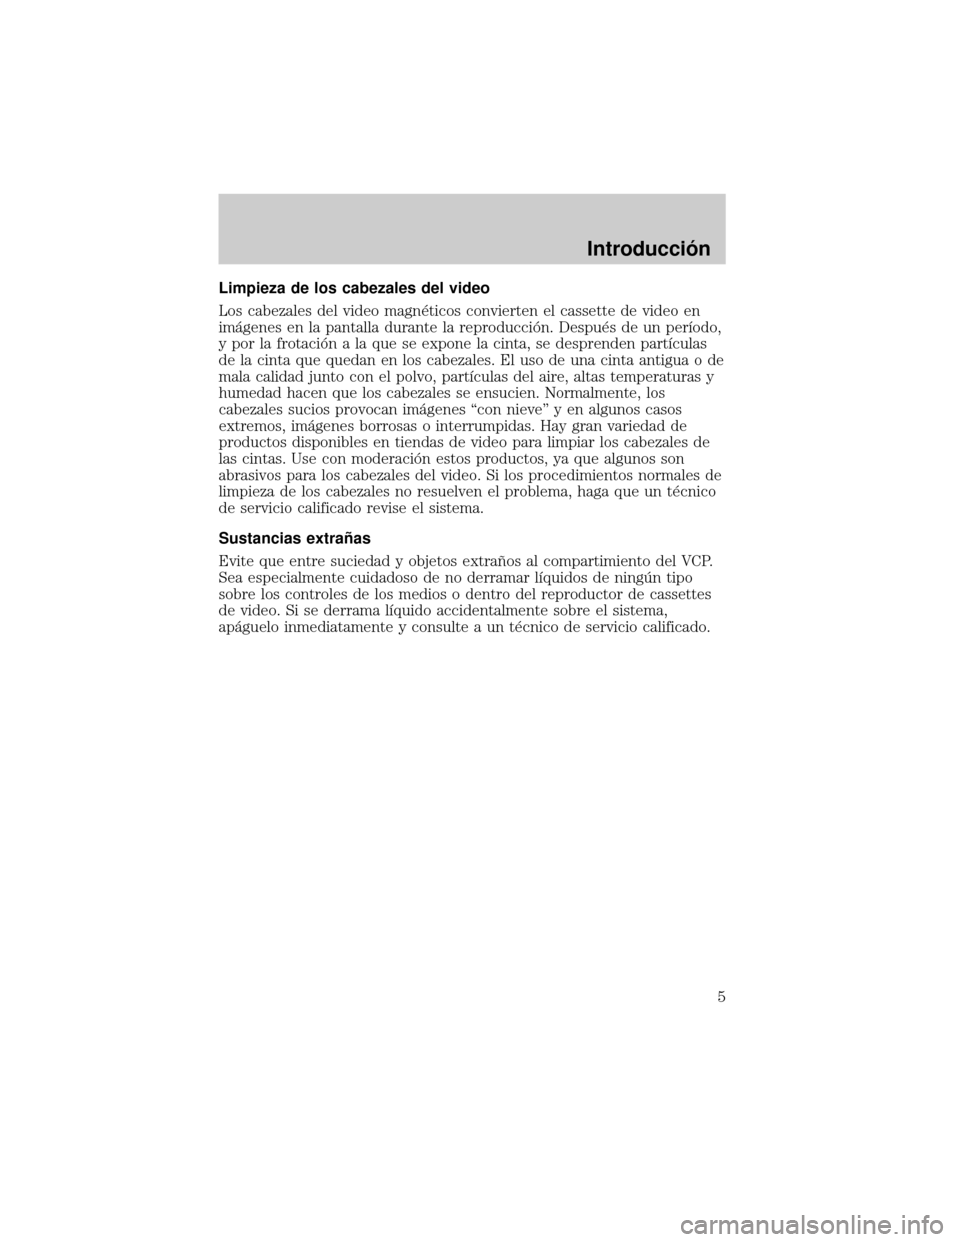 FORD EXPEDITION 2000 1.G Rear Seat Entertainment System Manual Limpieza de los cabezales del video
Los cabezales del video magn×ticos convierten el cassette de video en
imµgenes en la pantalla durante la reproducciân. Despu×s de un perÛodo,
y por la frotaci�